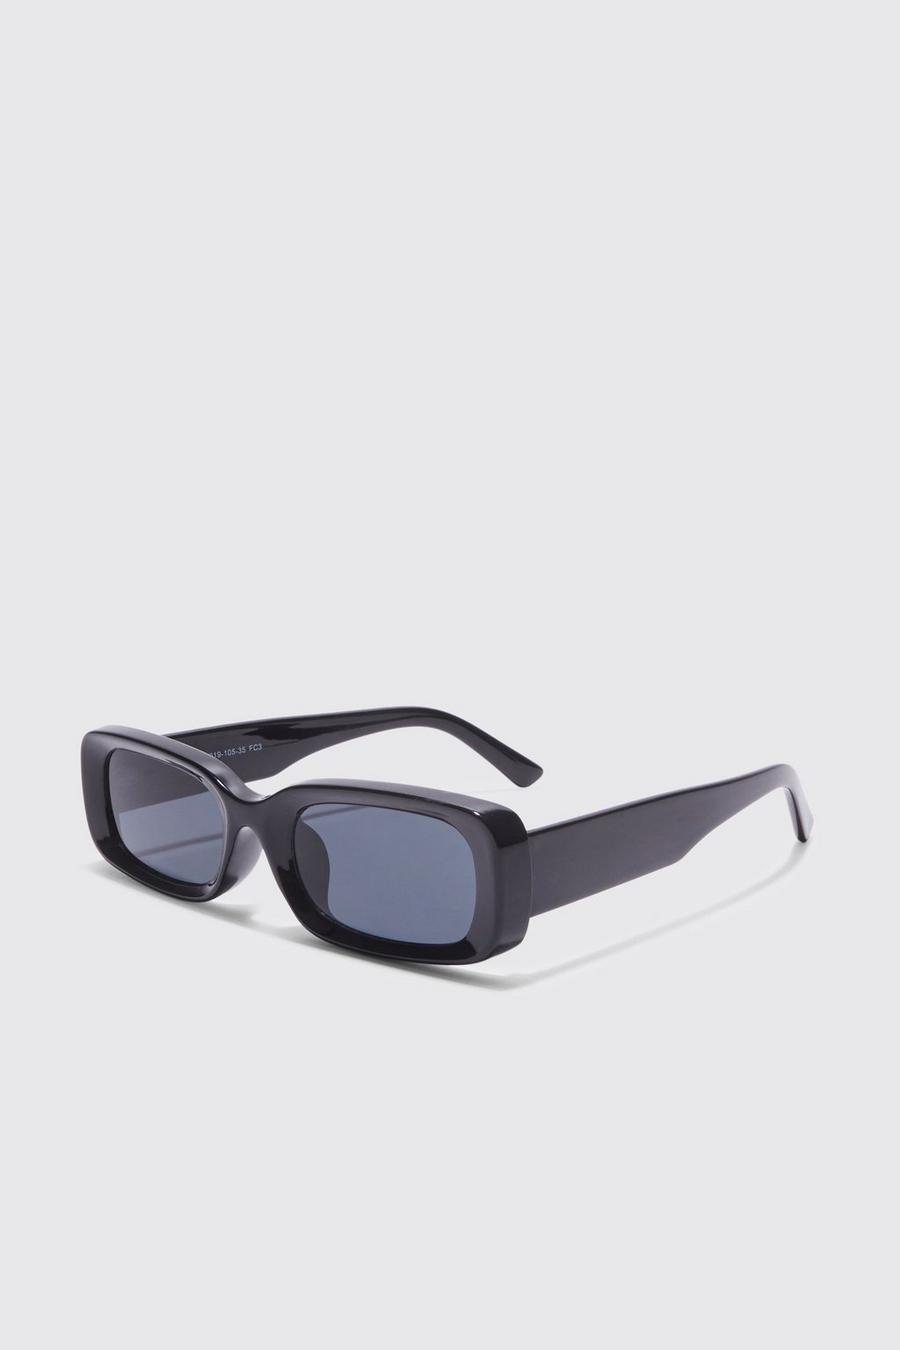 Gafas de sol gruesas rectangulares, Black